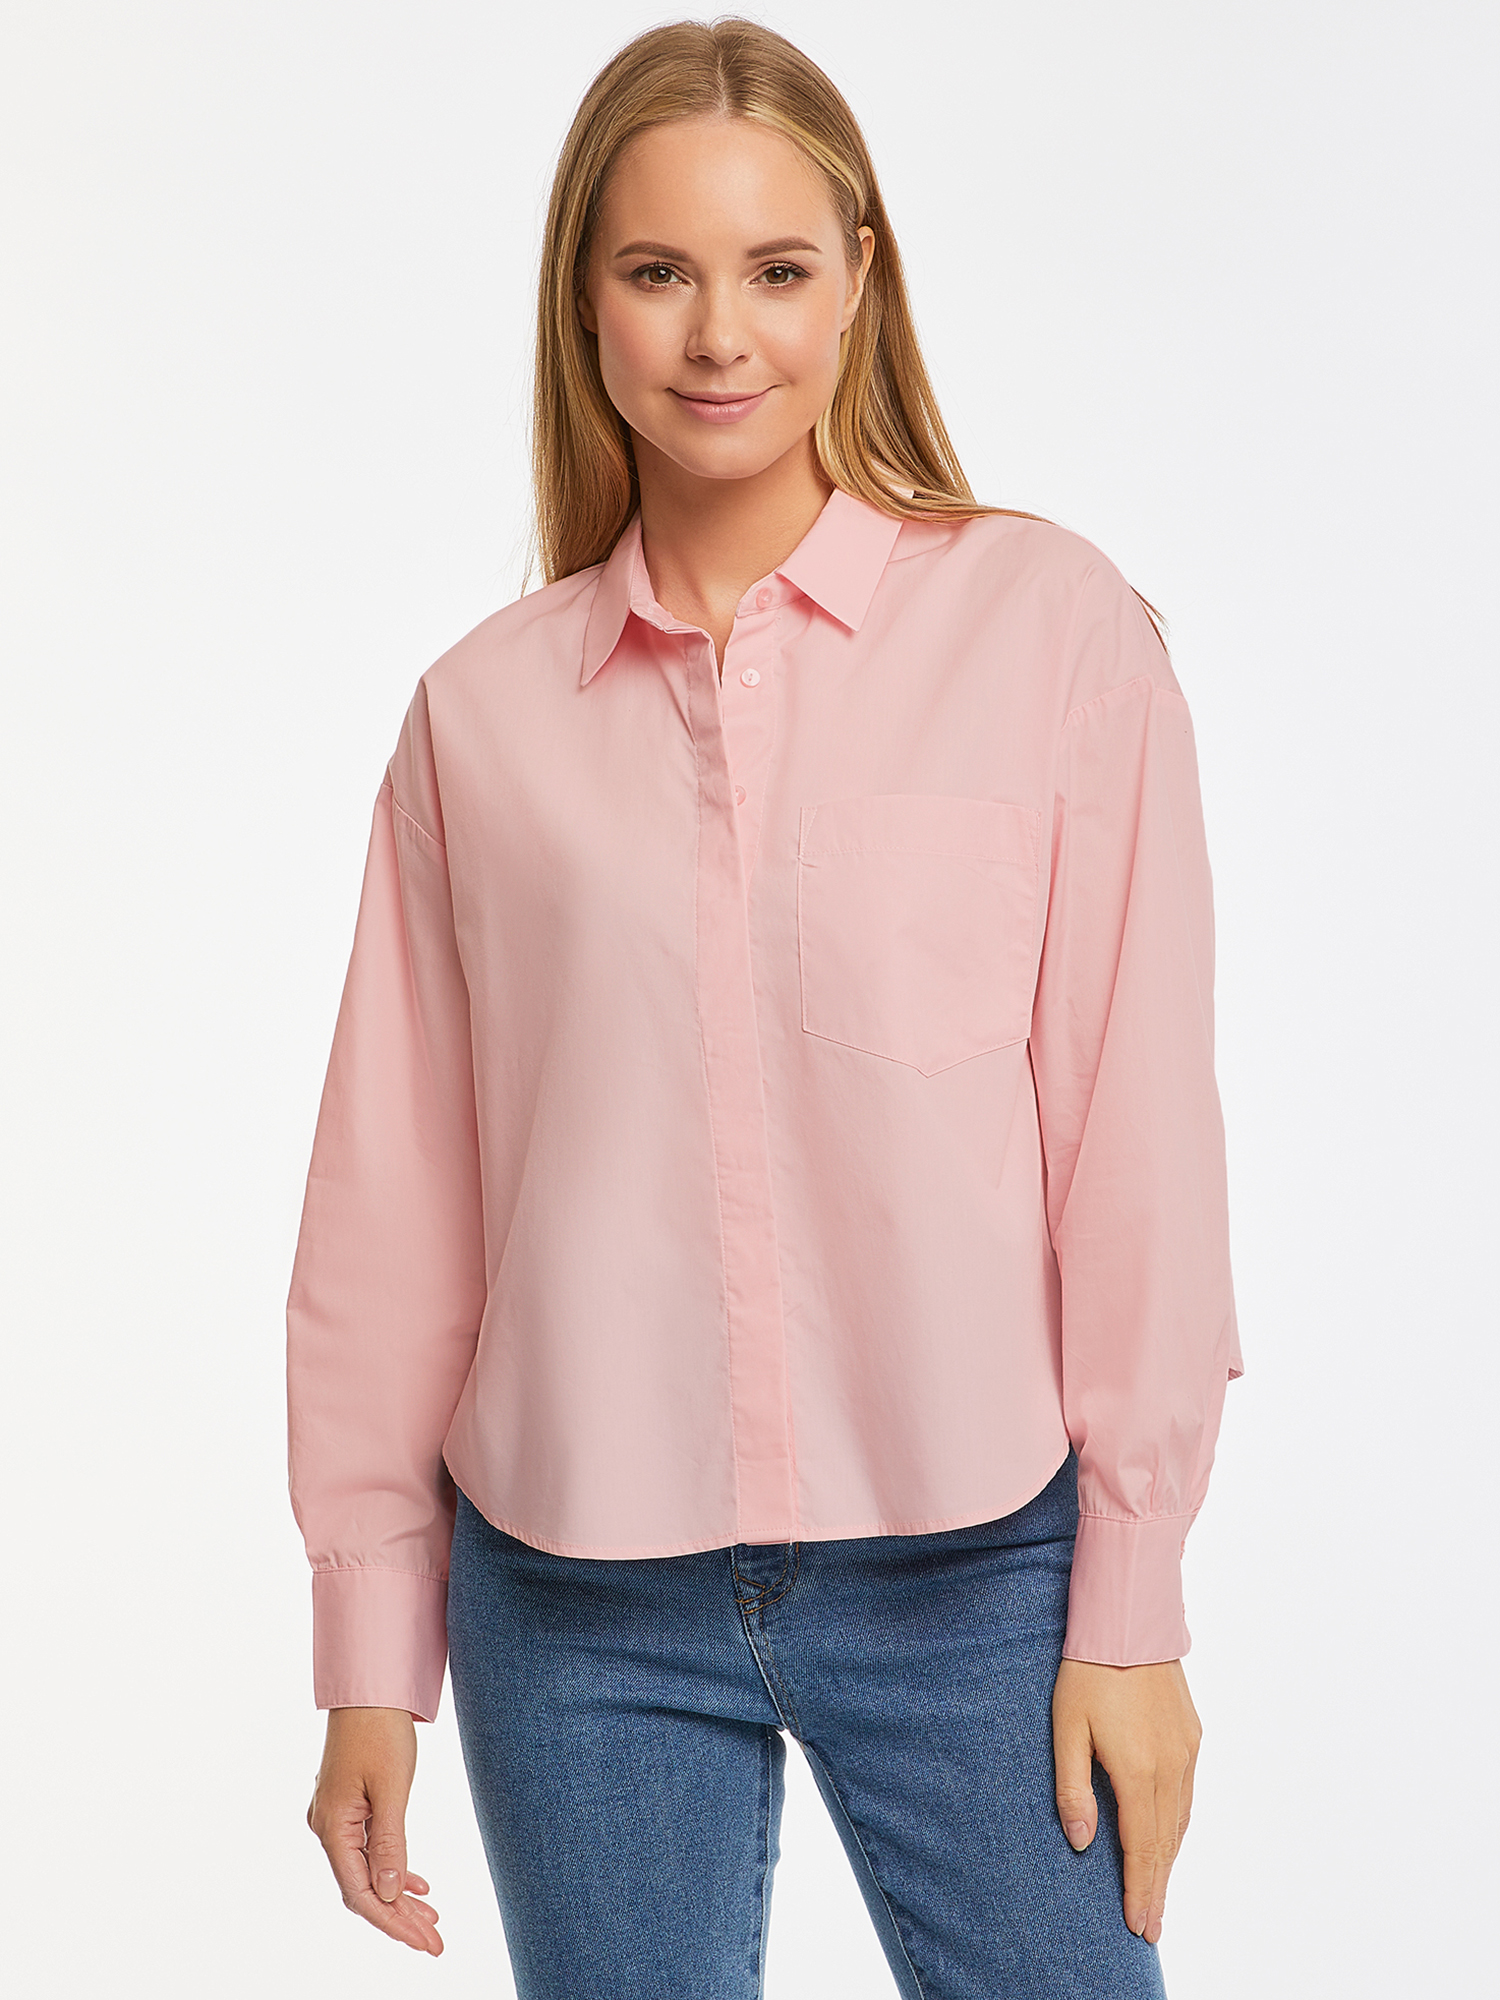 Рубашка женская oodji 13K11033-2 розовая 44 EU